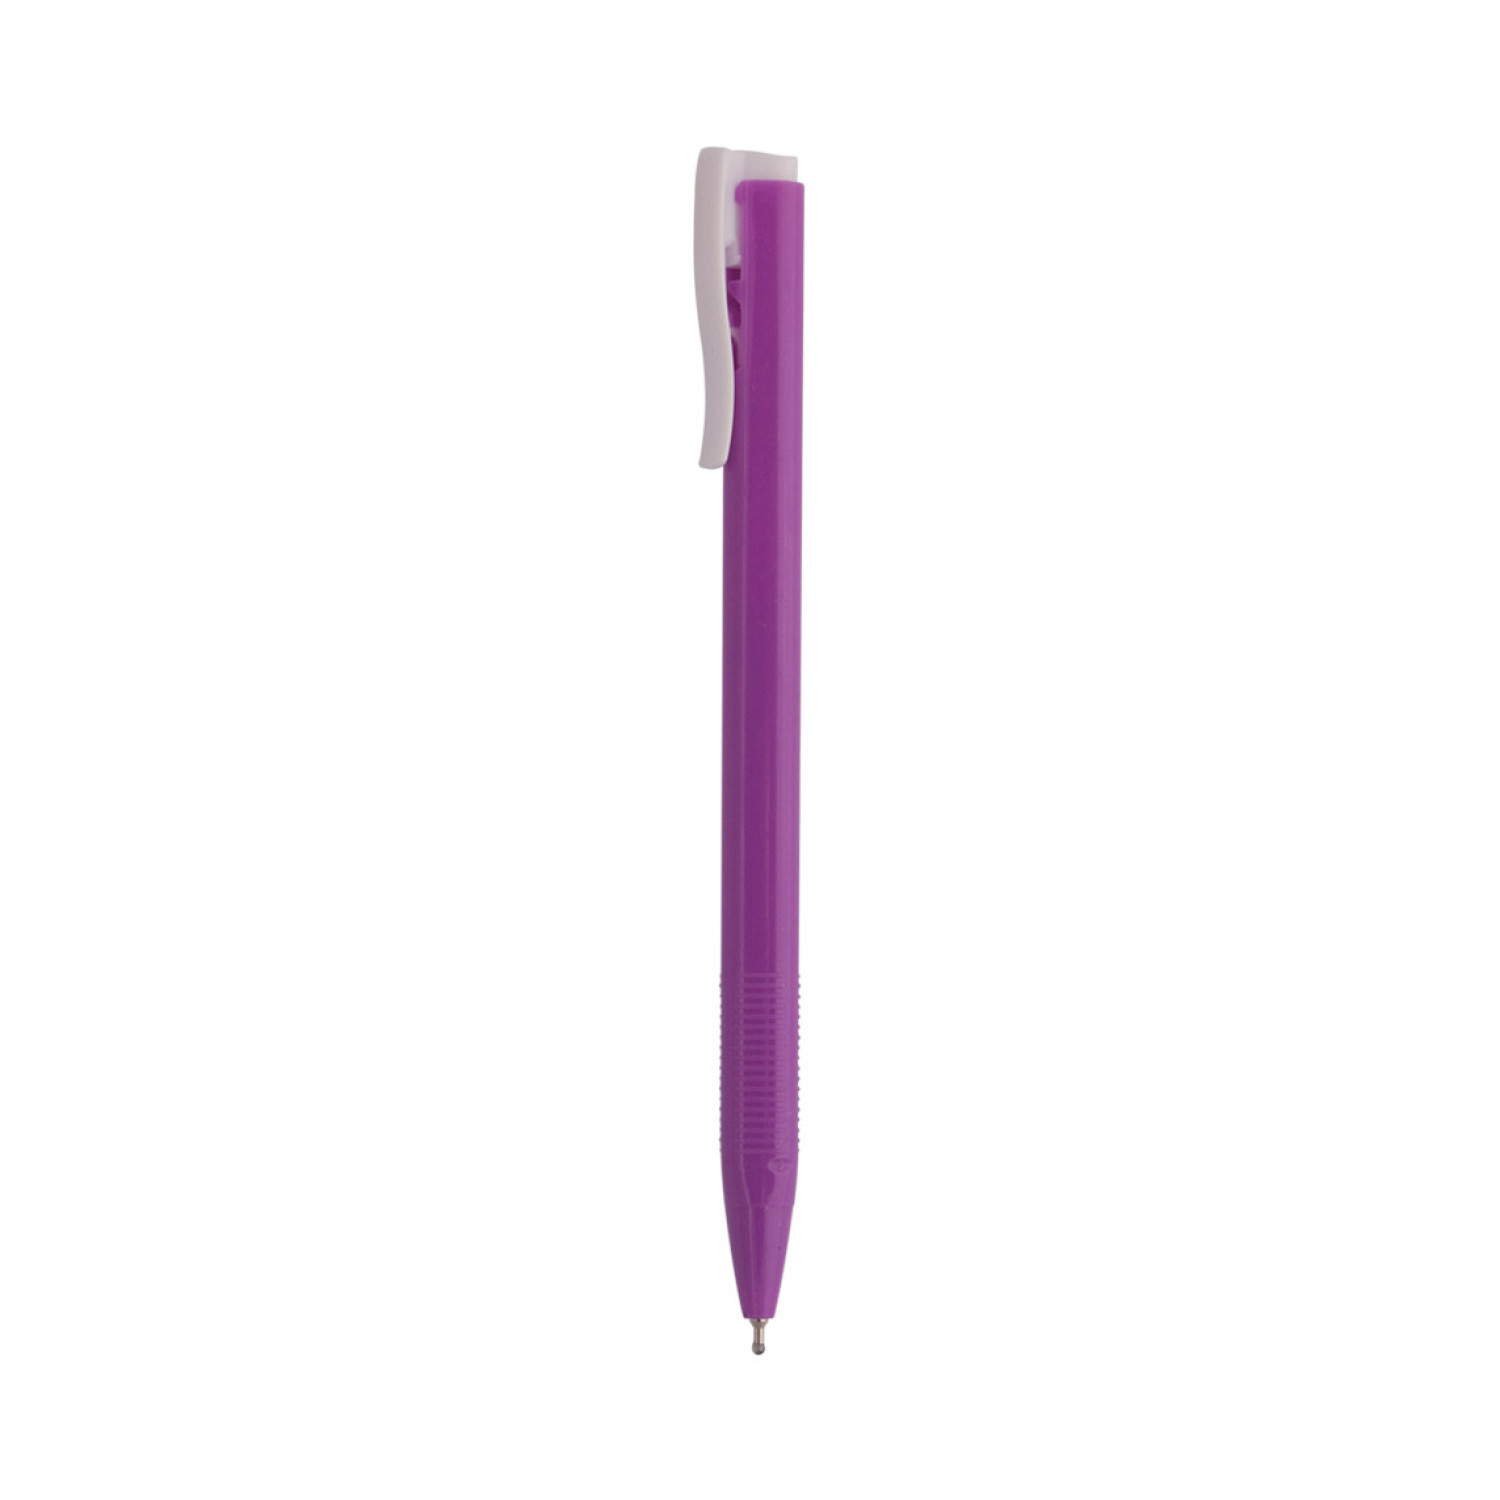 Пластмасова химикалка 9126, лилав